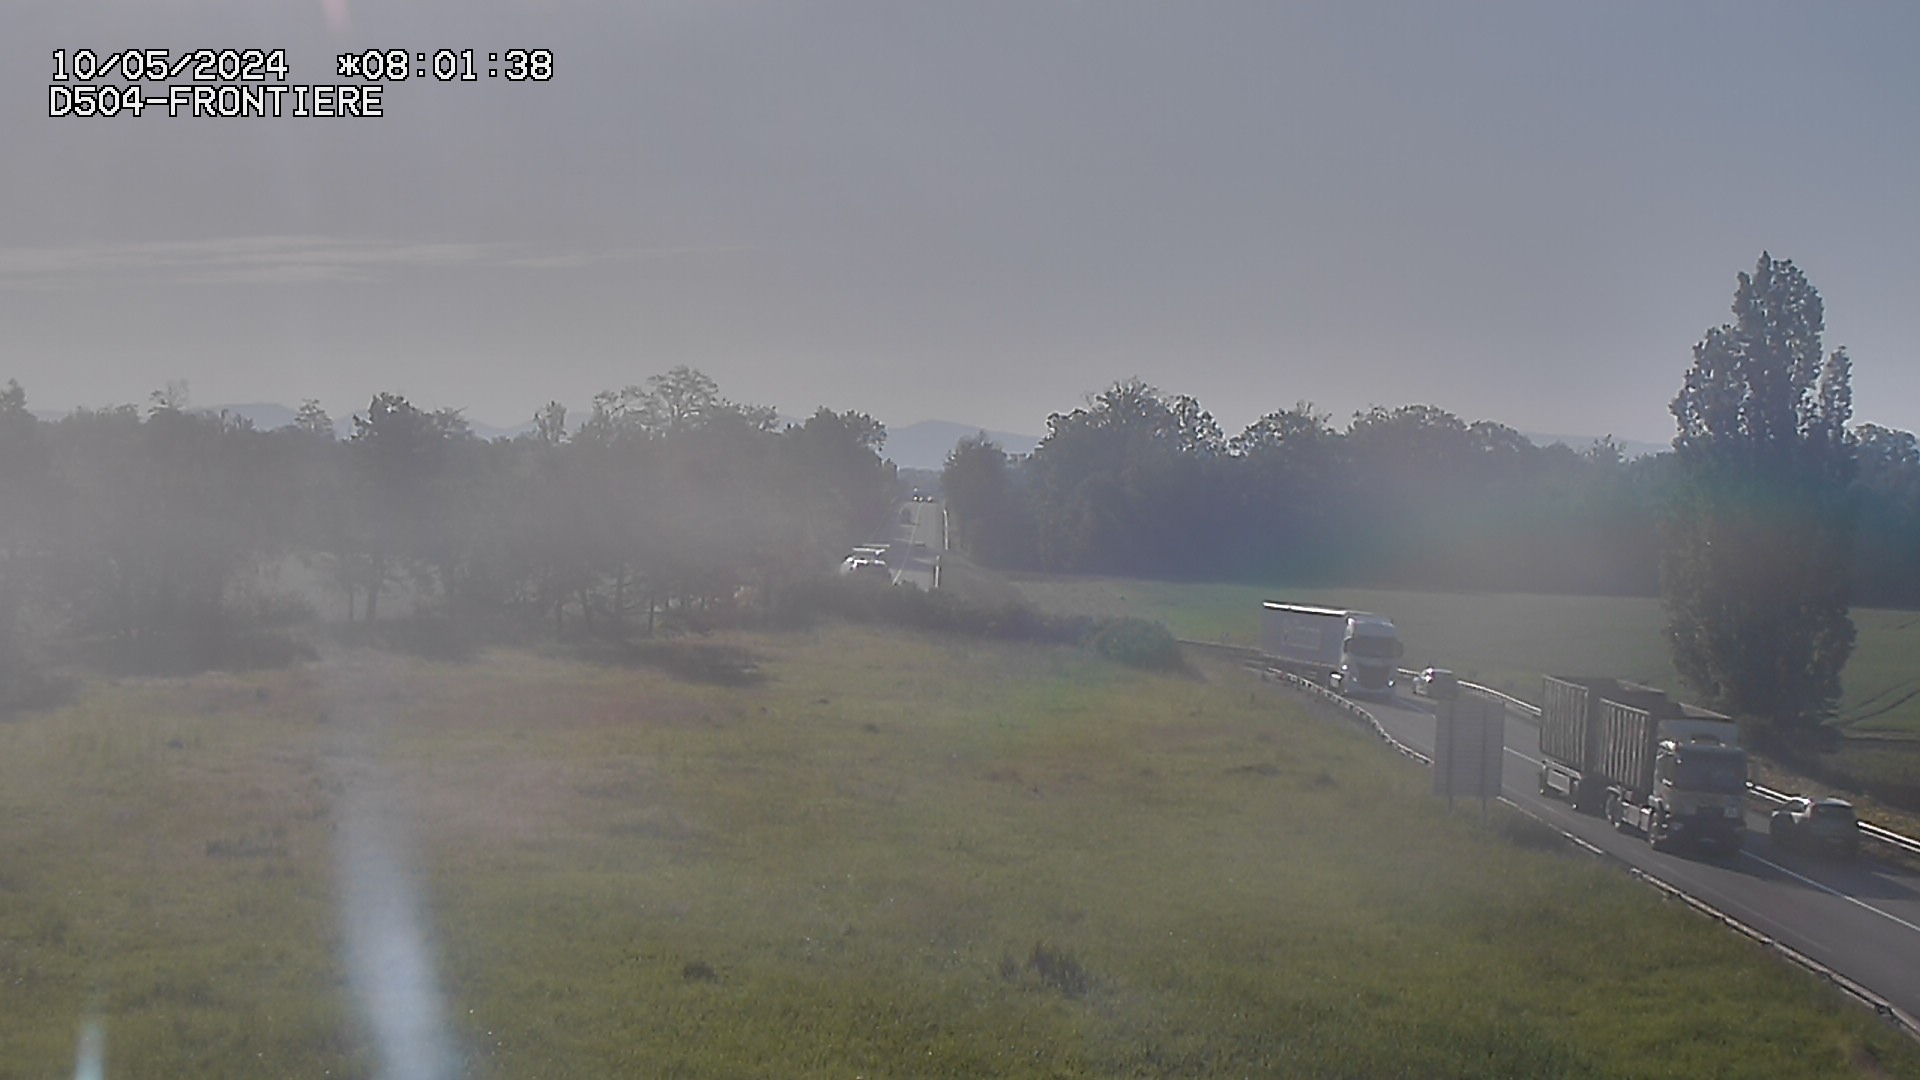 Webcam routière à Roppenheim sur la D4. La voie en sens inverse se dirige vers la frontière allemande